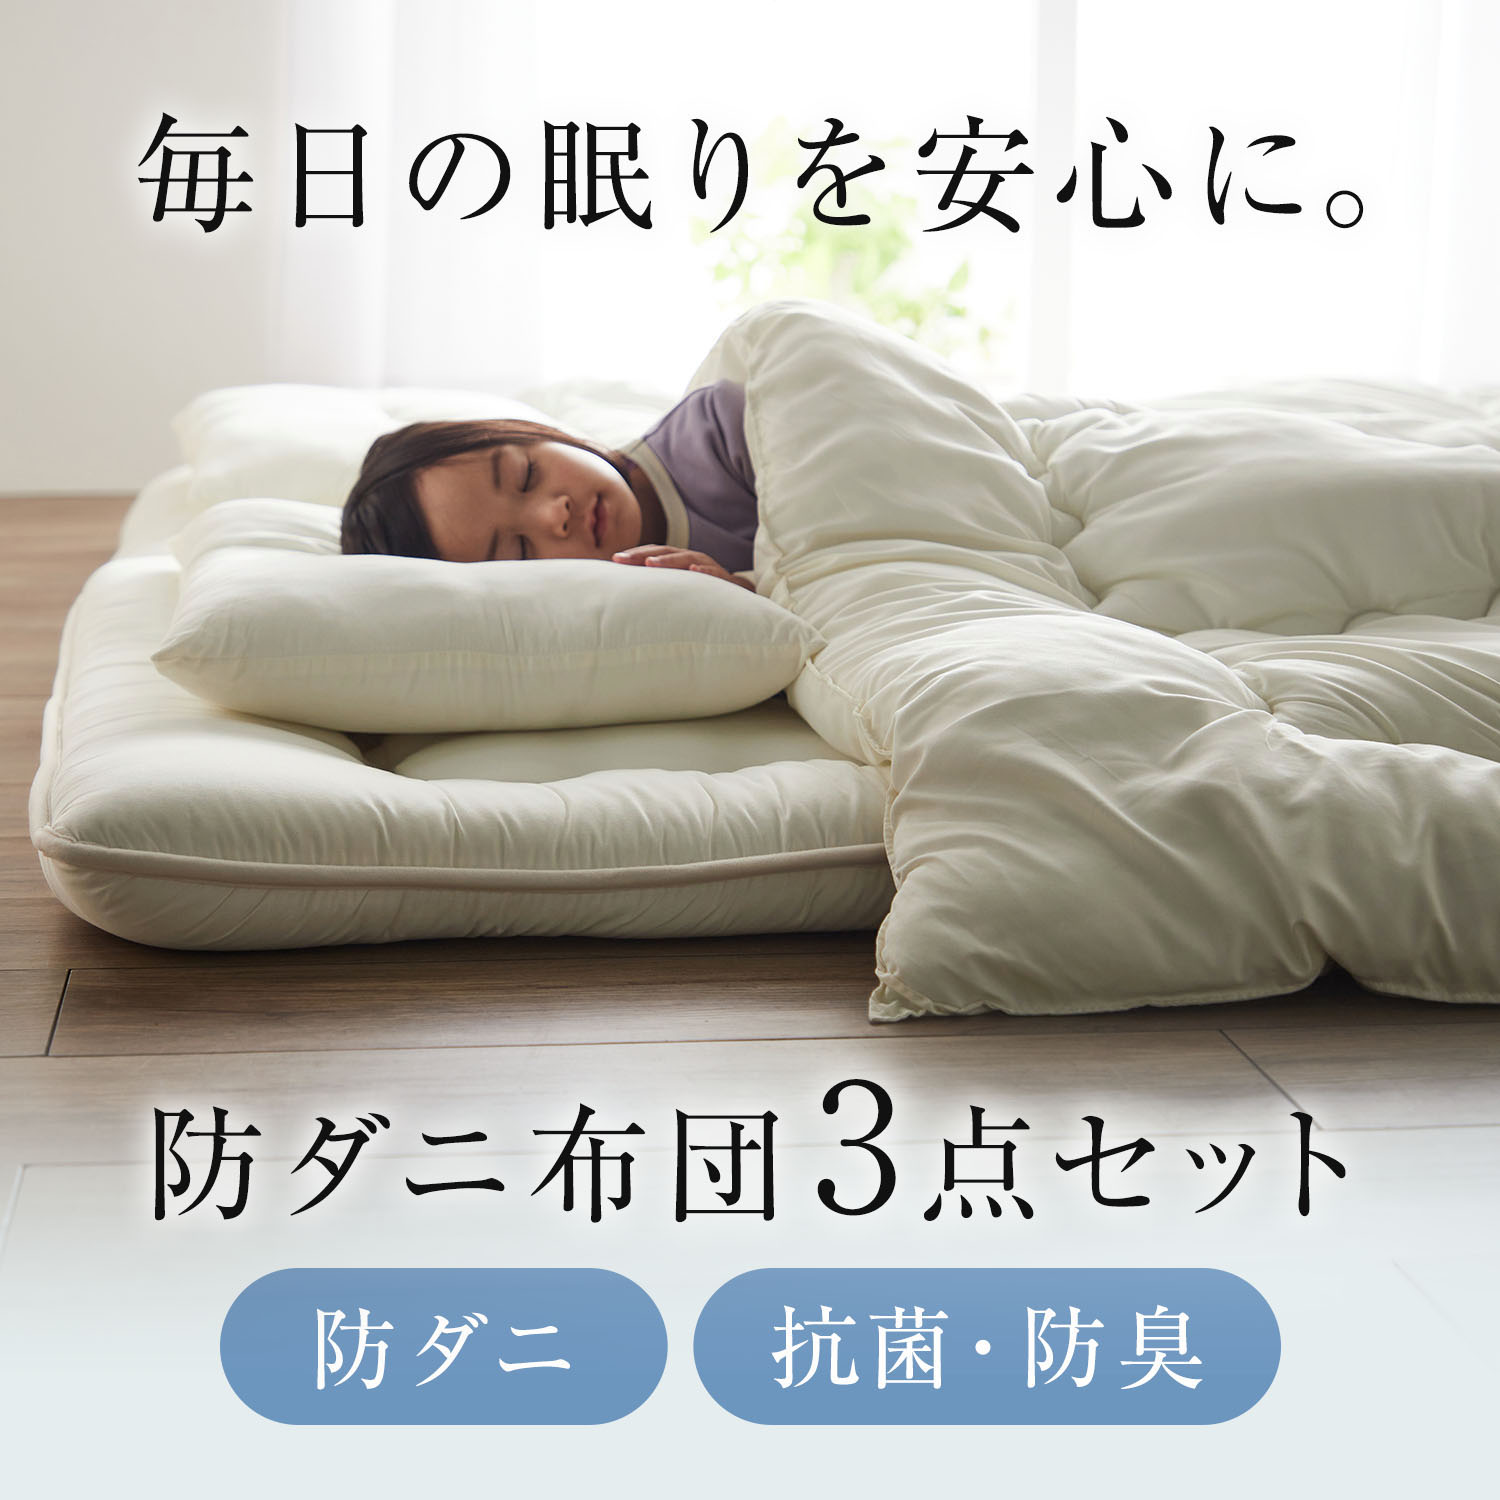 東京銀座布団セット ベッド用１０点 ダブルサイズ 色-アイボリー /シンサレート高機能中綿素材 暖かい ダブル用